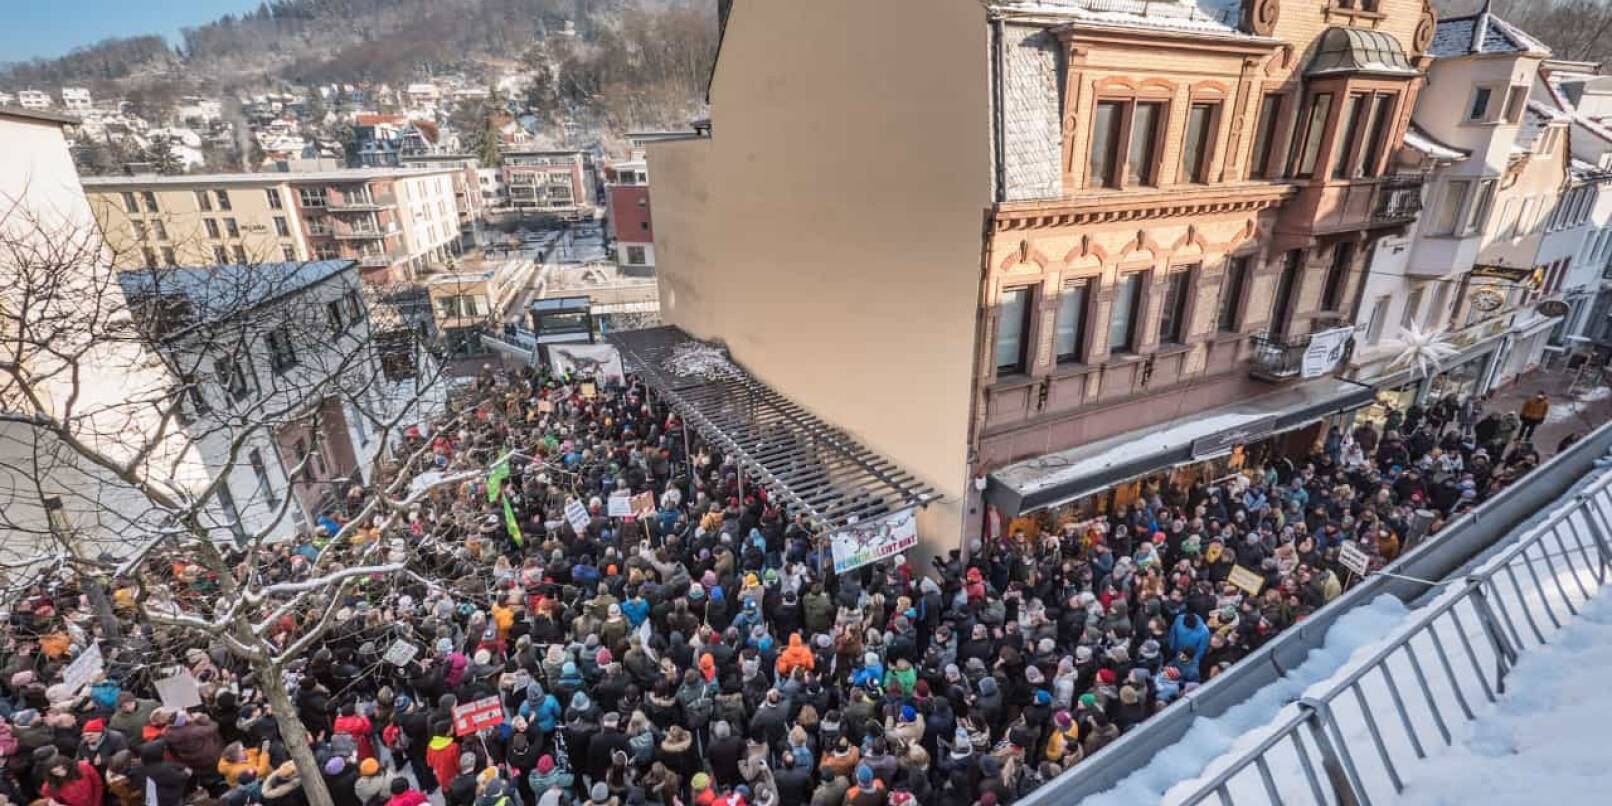 Der Windeckplatz hat nicht ausgereicht: Die Teilnehmer der Kundgebung gegen rechts am Samstag in Weinheim mussten teilweise auch entlang der Fußgängerzone stehen.